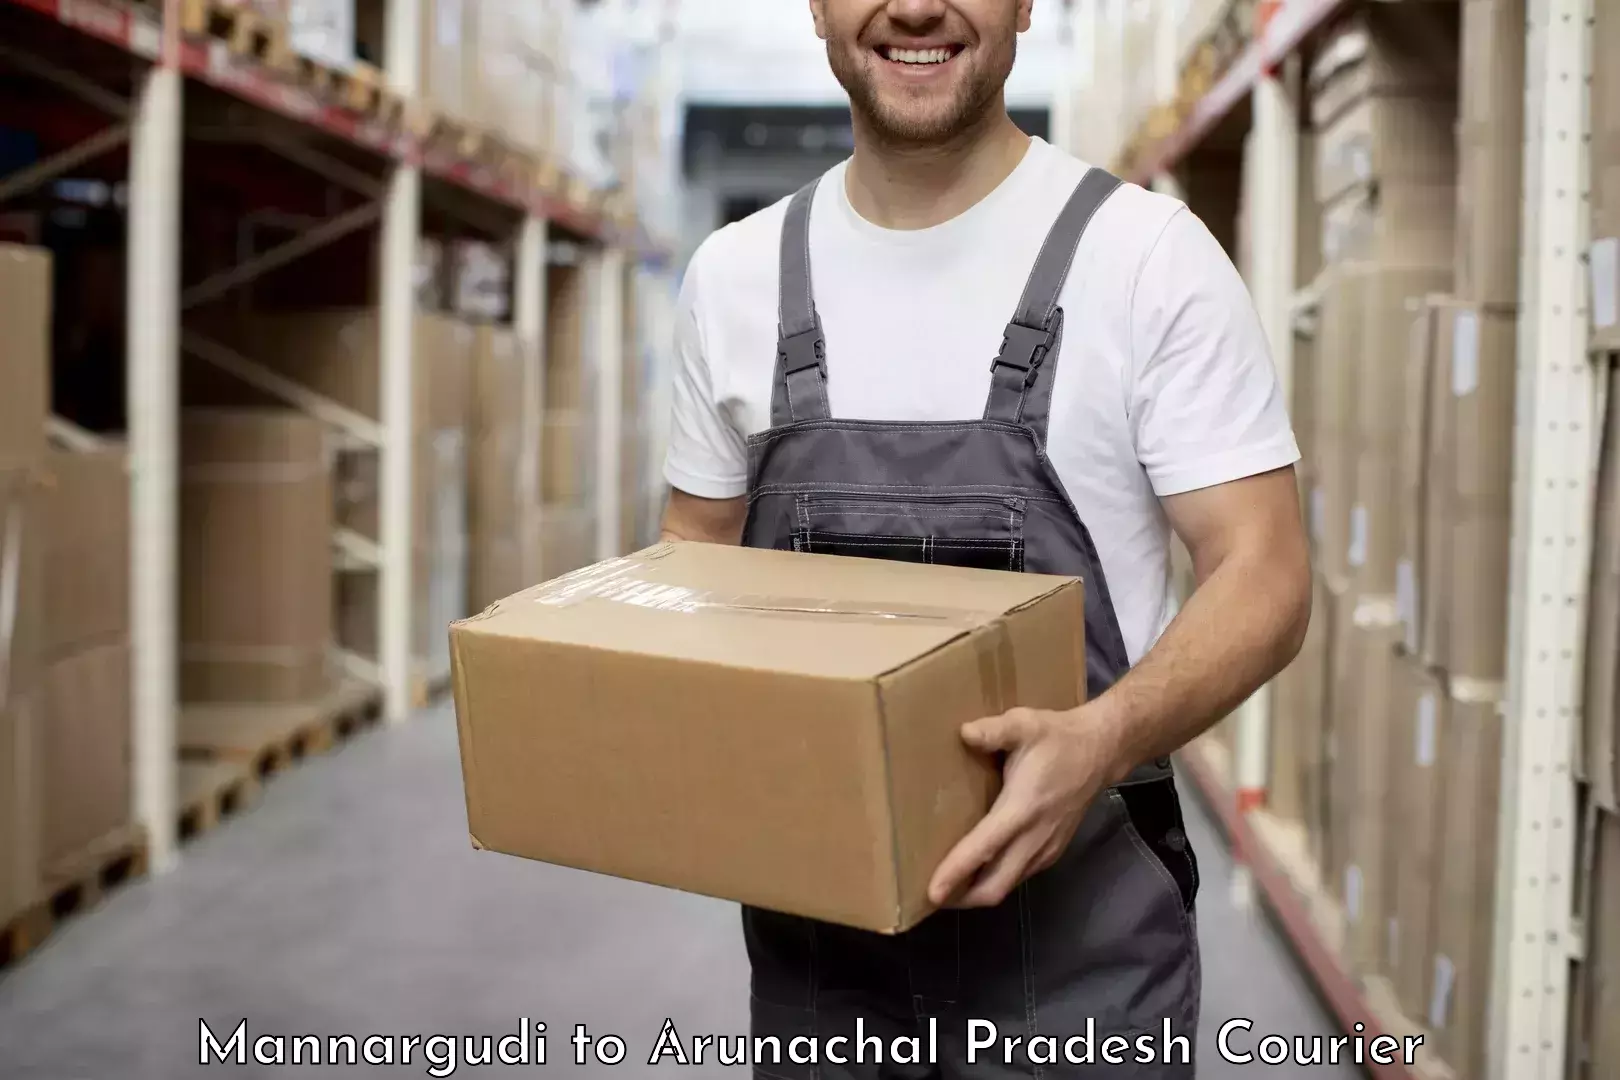 Speedy delivery service Mannargudi to Arunachal Pradesh